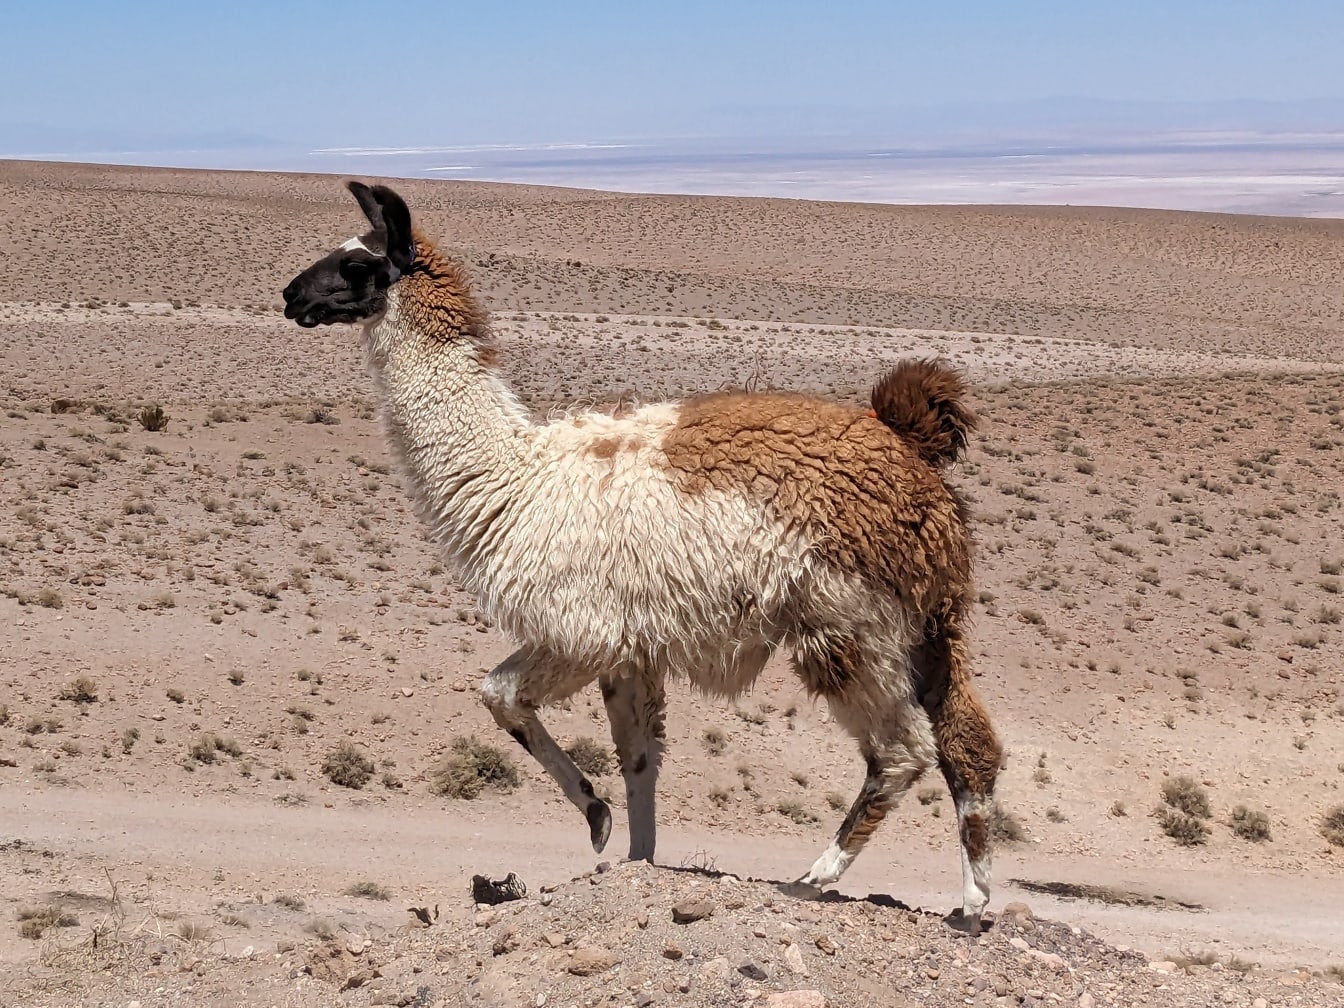 Lhama peruana caminha em colina no deserto em alta altitude (Lama glama)